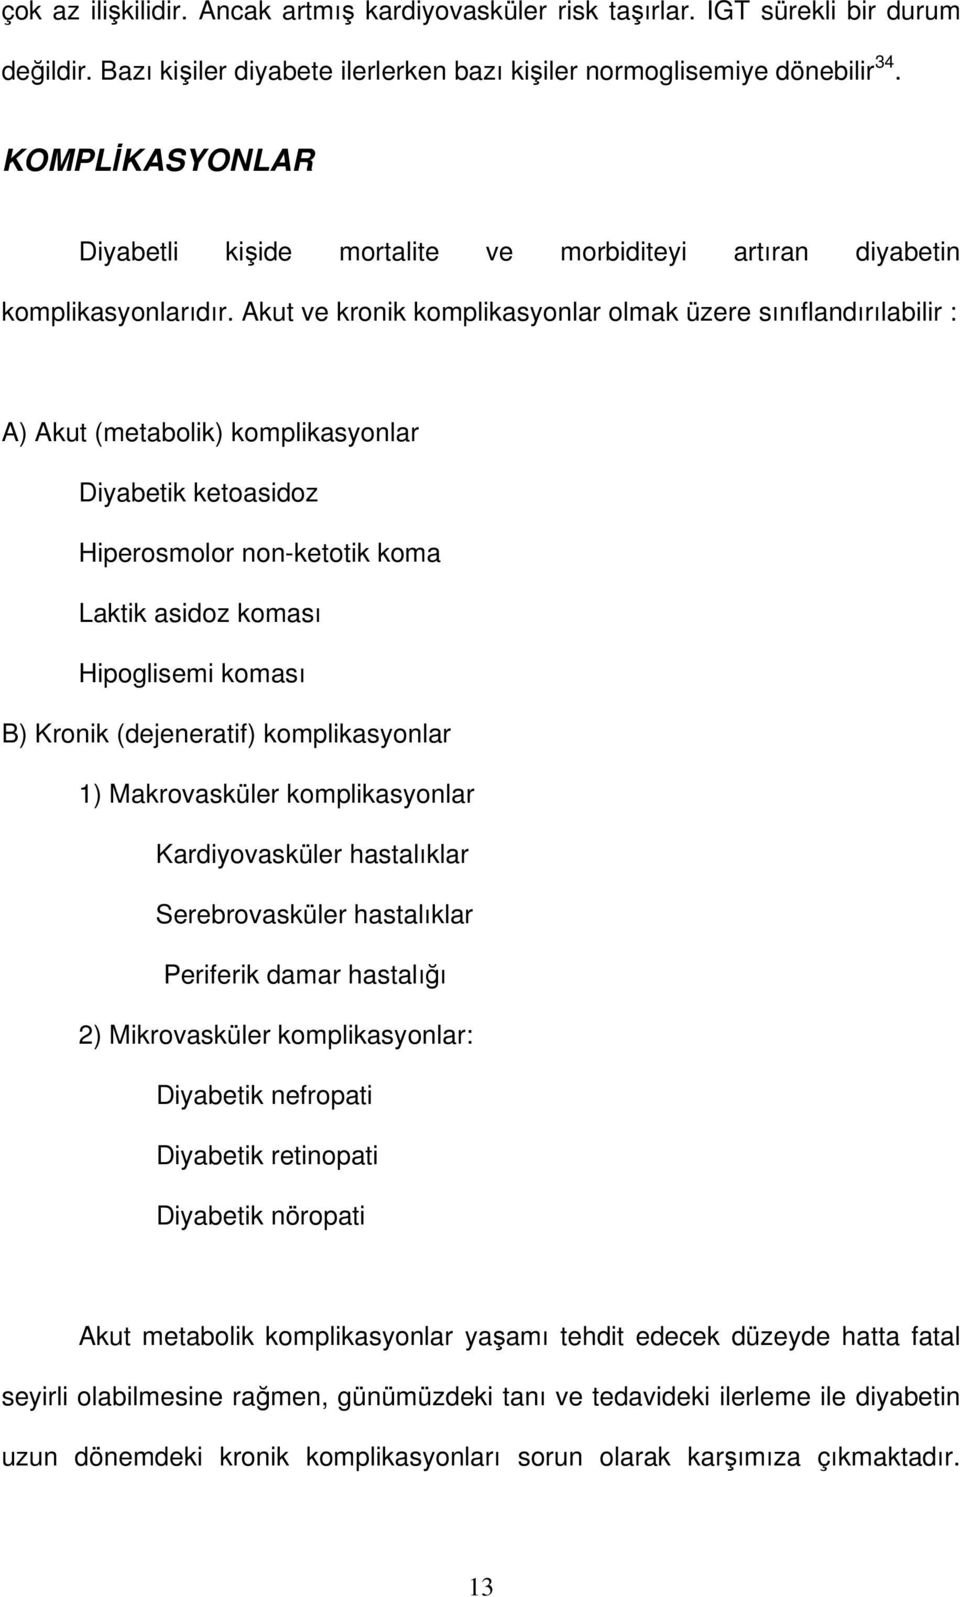 Akut ve kronik komplikasyonlar olmak üzere sınıflandırılabilir : A) Akut (metabolik) komplikasyonlar Diyabetik ketoasidoz Hiperosmolor non-ketotik koma Laktik asidoz koması Hipoglisemi koması B)